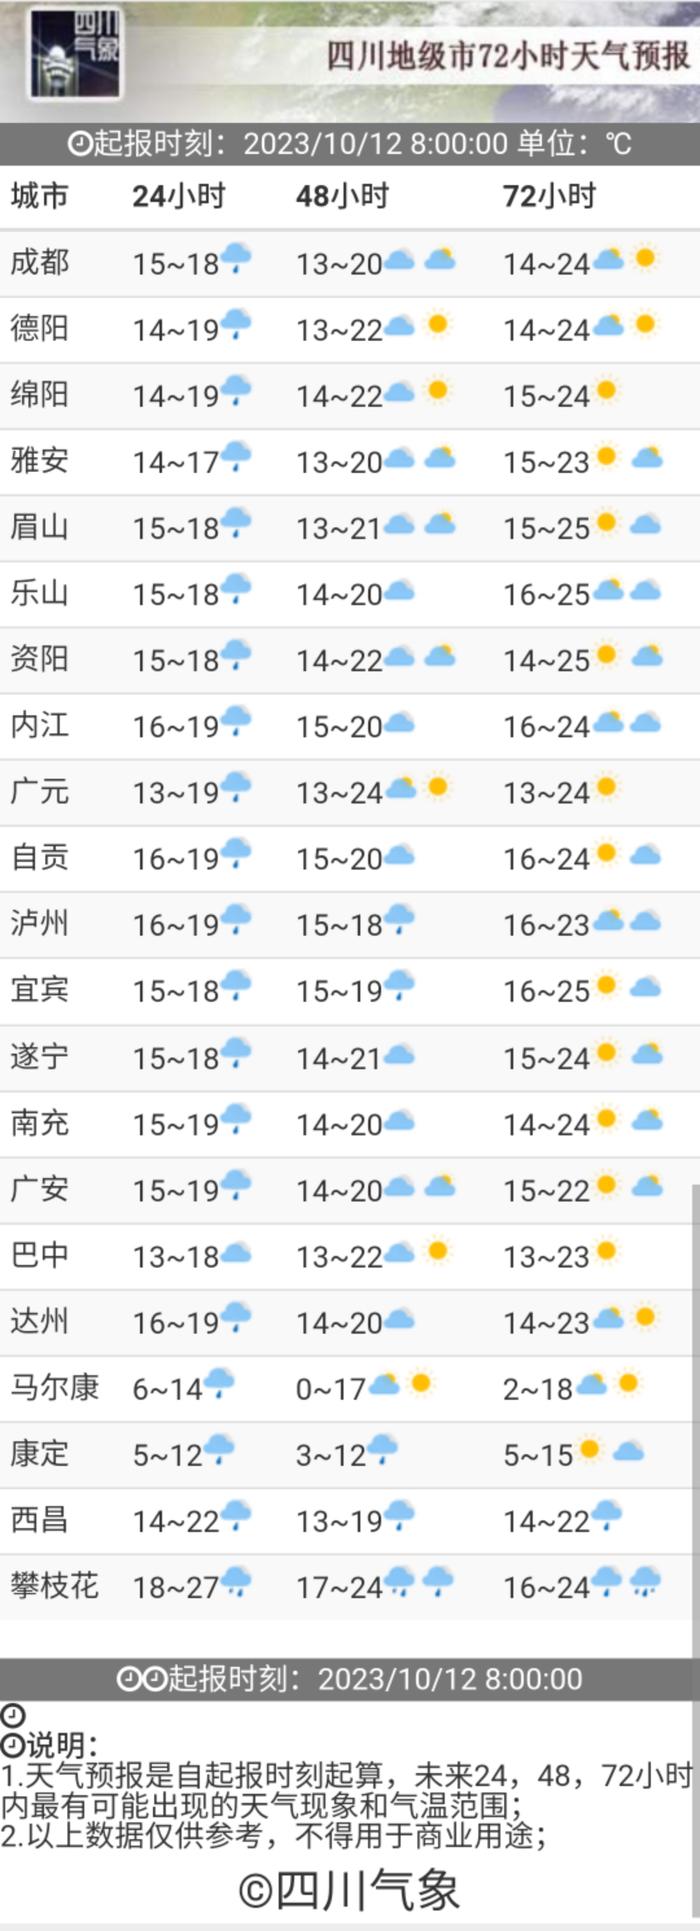 连续下了这么多天雨，本周四川还有晴天吗？